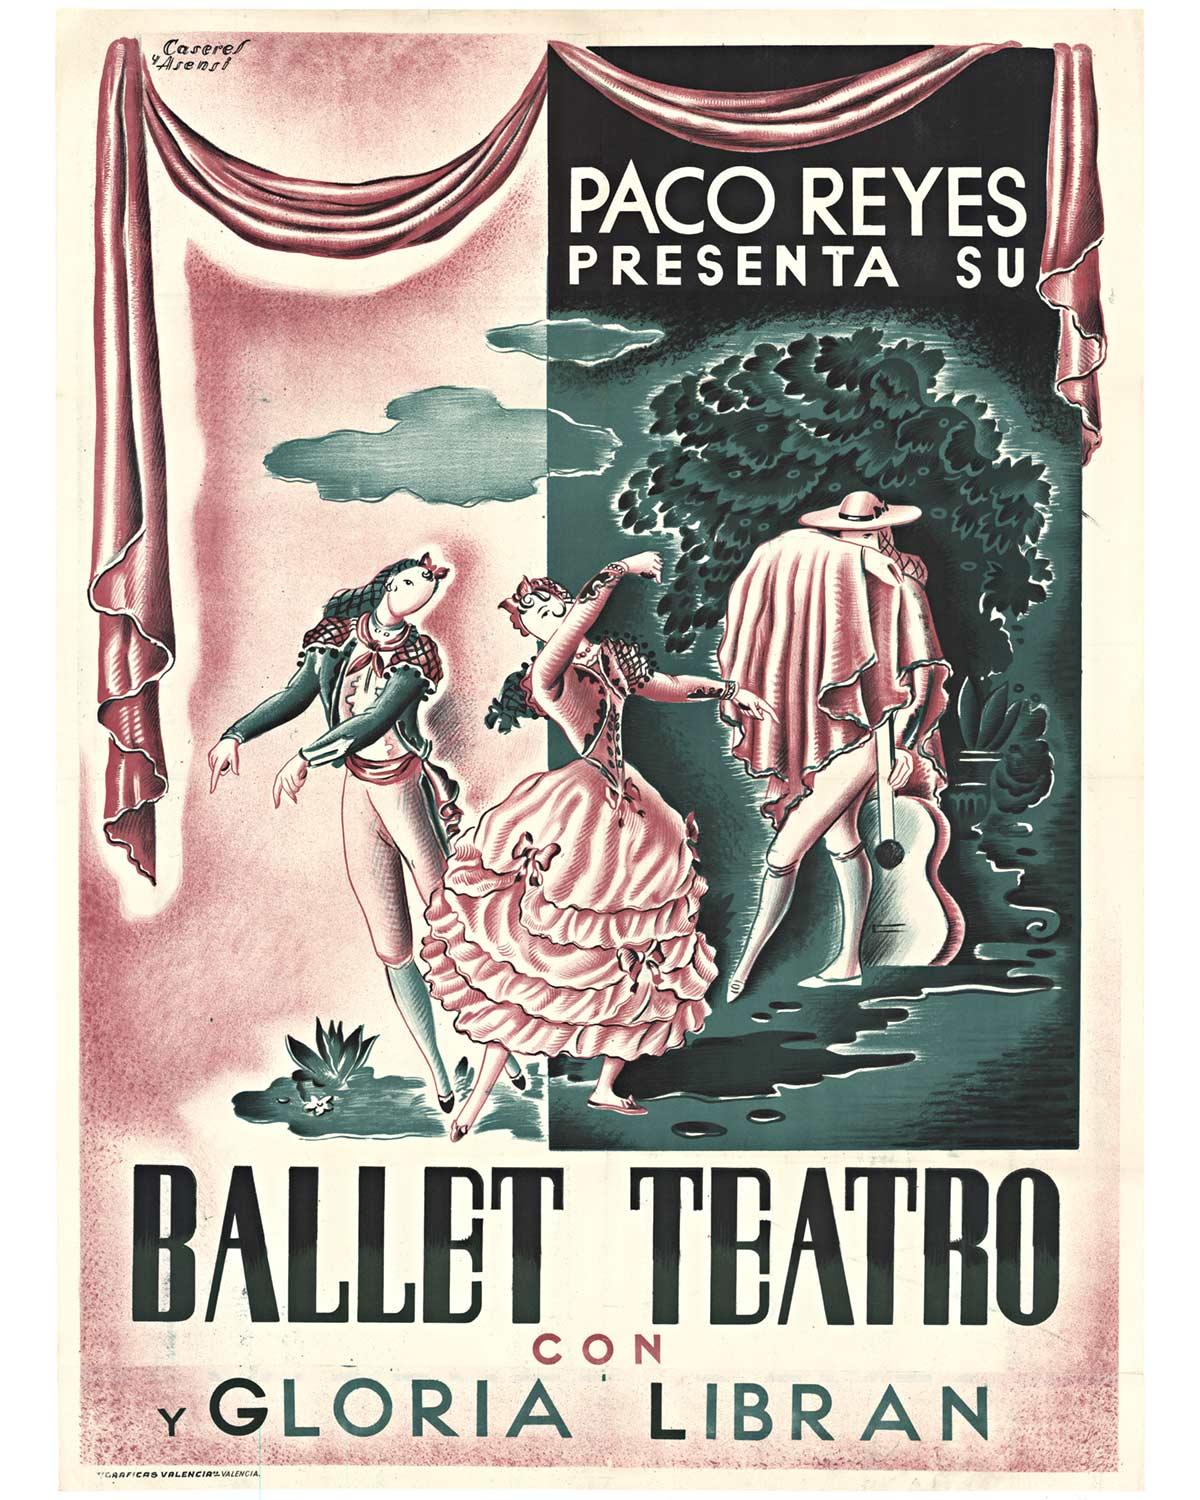 Original Paco Reyes Presenta Su Ballet Teatro con y Gloria Libran vintage poster